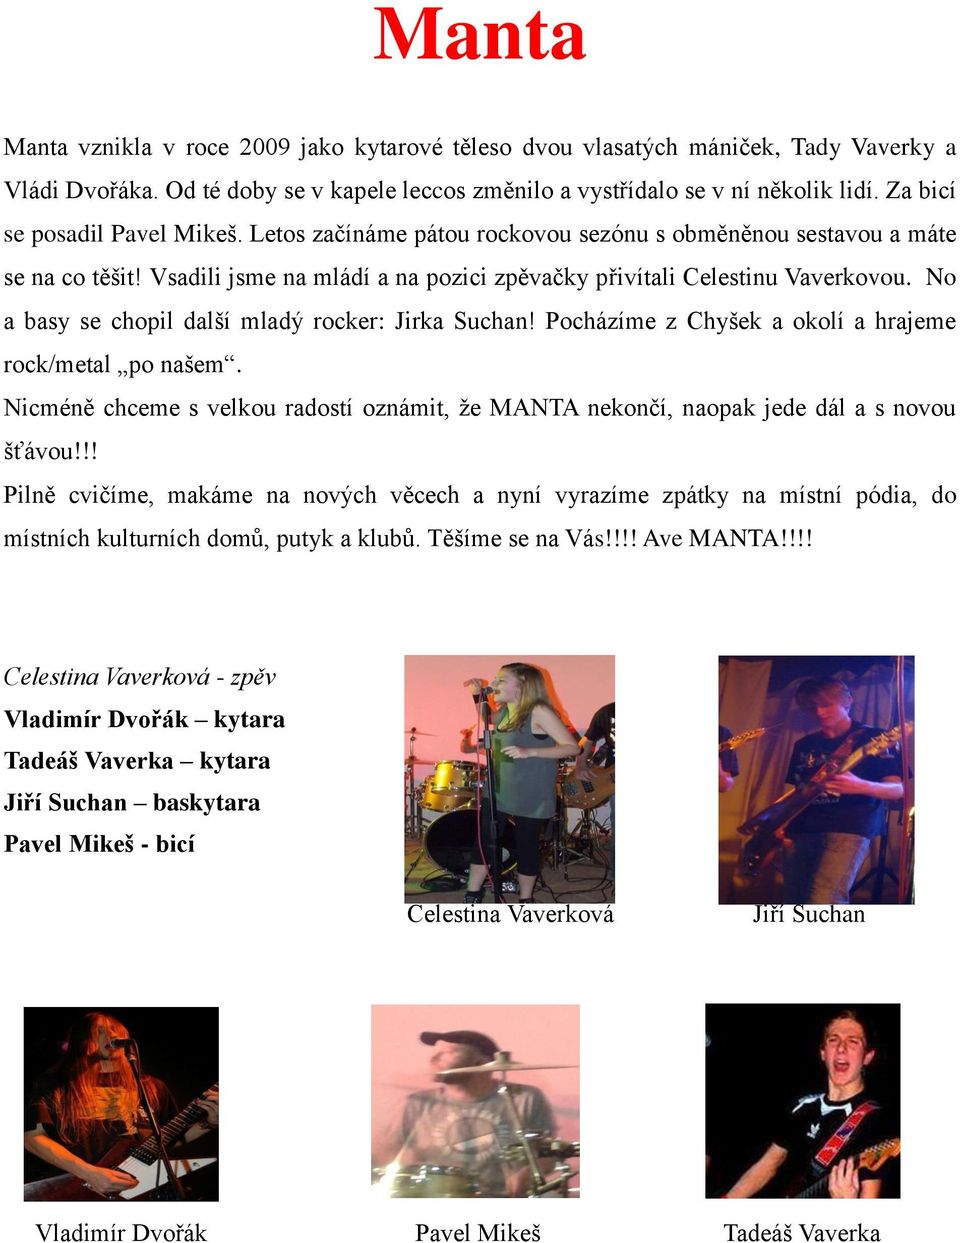 No a basy se chopil další mladý rocker: Jirka Suchan! Pocházíme z Chyšek a okolí a hrajeme rock/metal po našem.